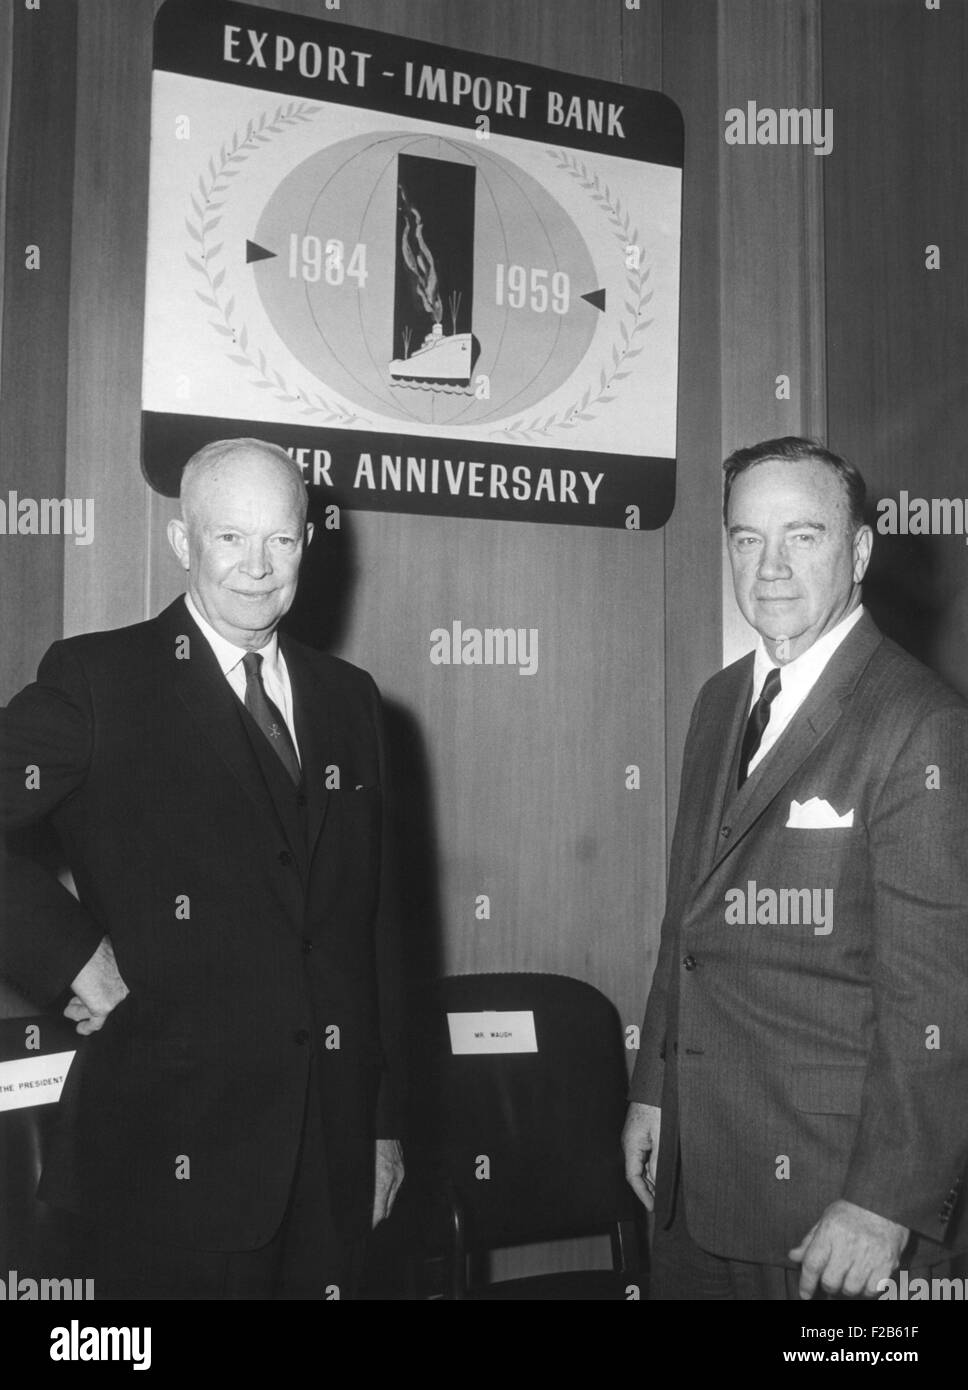 Präsident Eisenhower mit Samuel Waugh der Export-Import Bank auf ihr 25-jähriges bestehen. 12. Februar 1959. Samuel Waugh war Präsident und Vorsitzender des Vorstands der Export-Import Bank of Washington. -(BSLOC 2014 16 181) Stockfoto